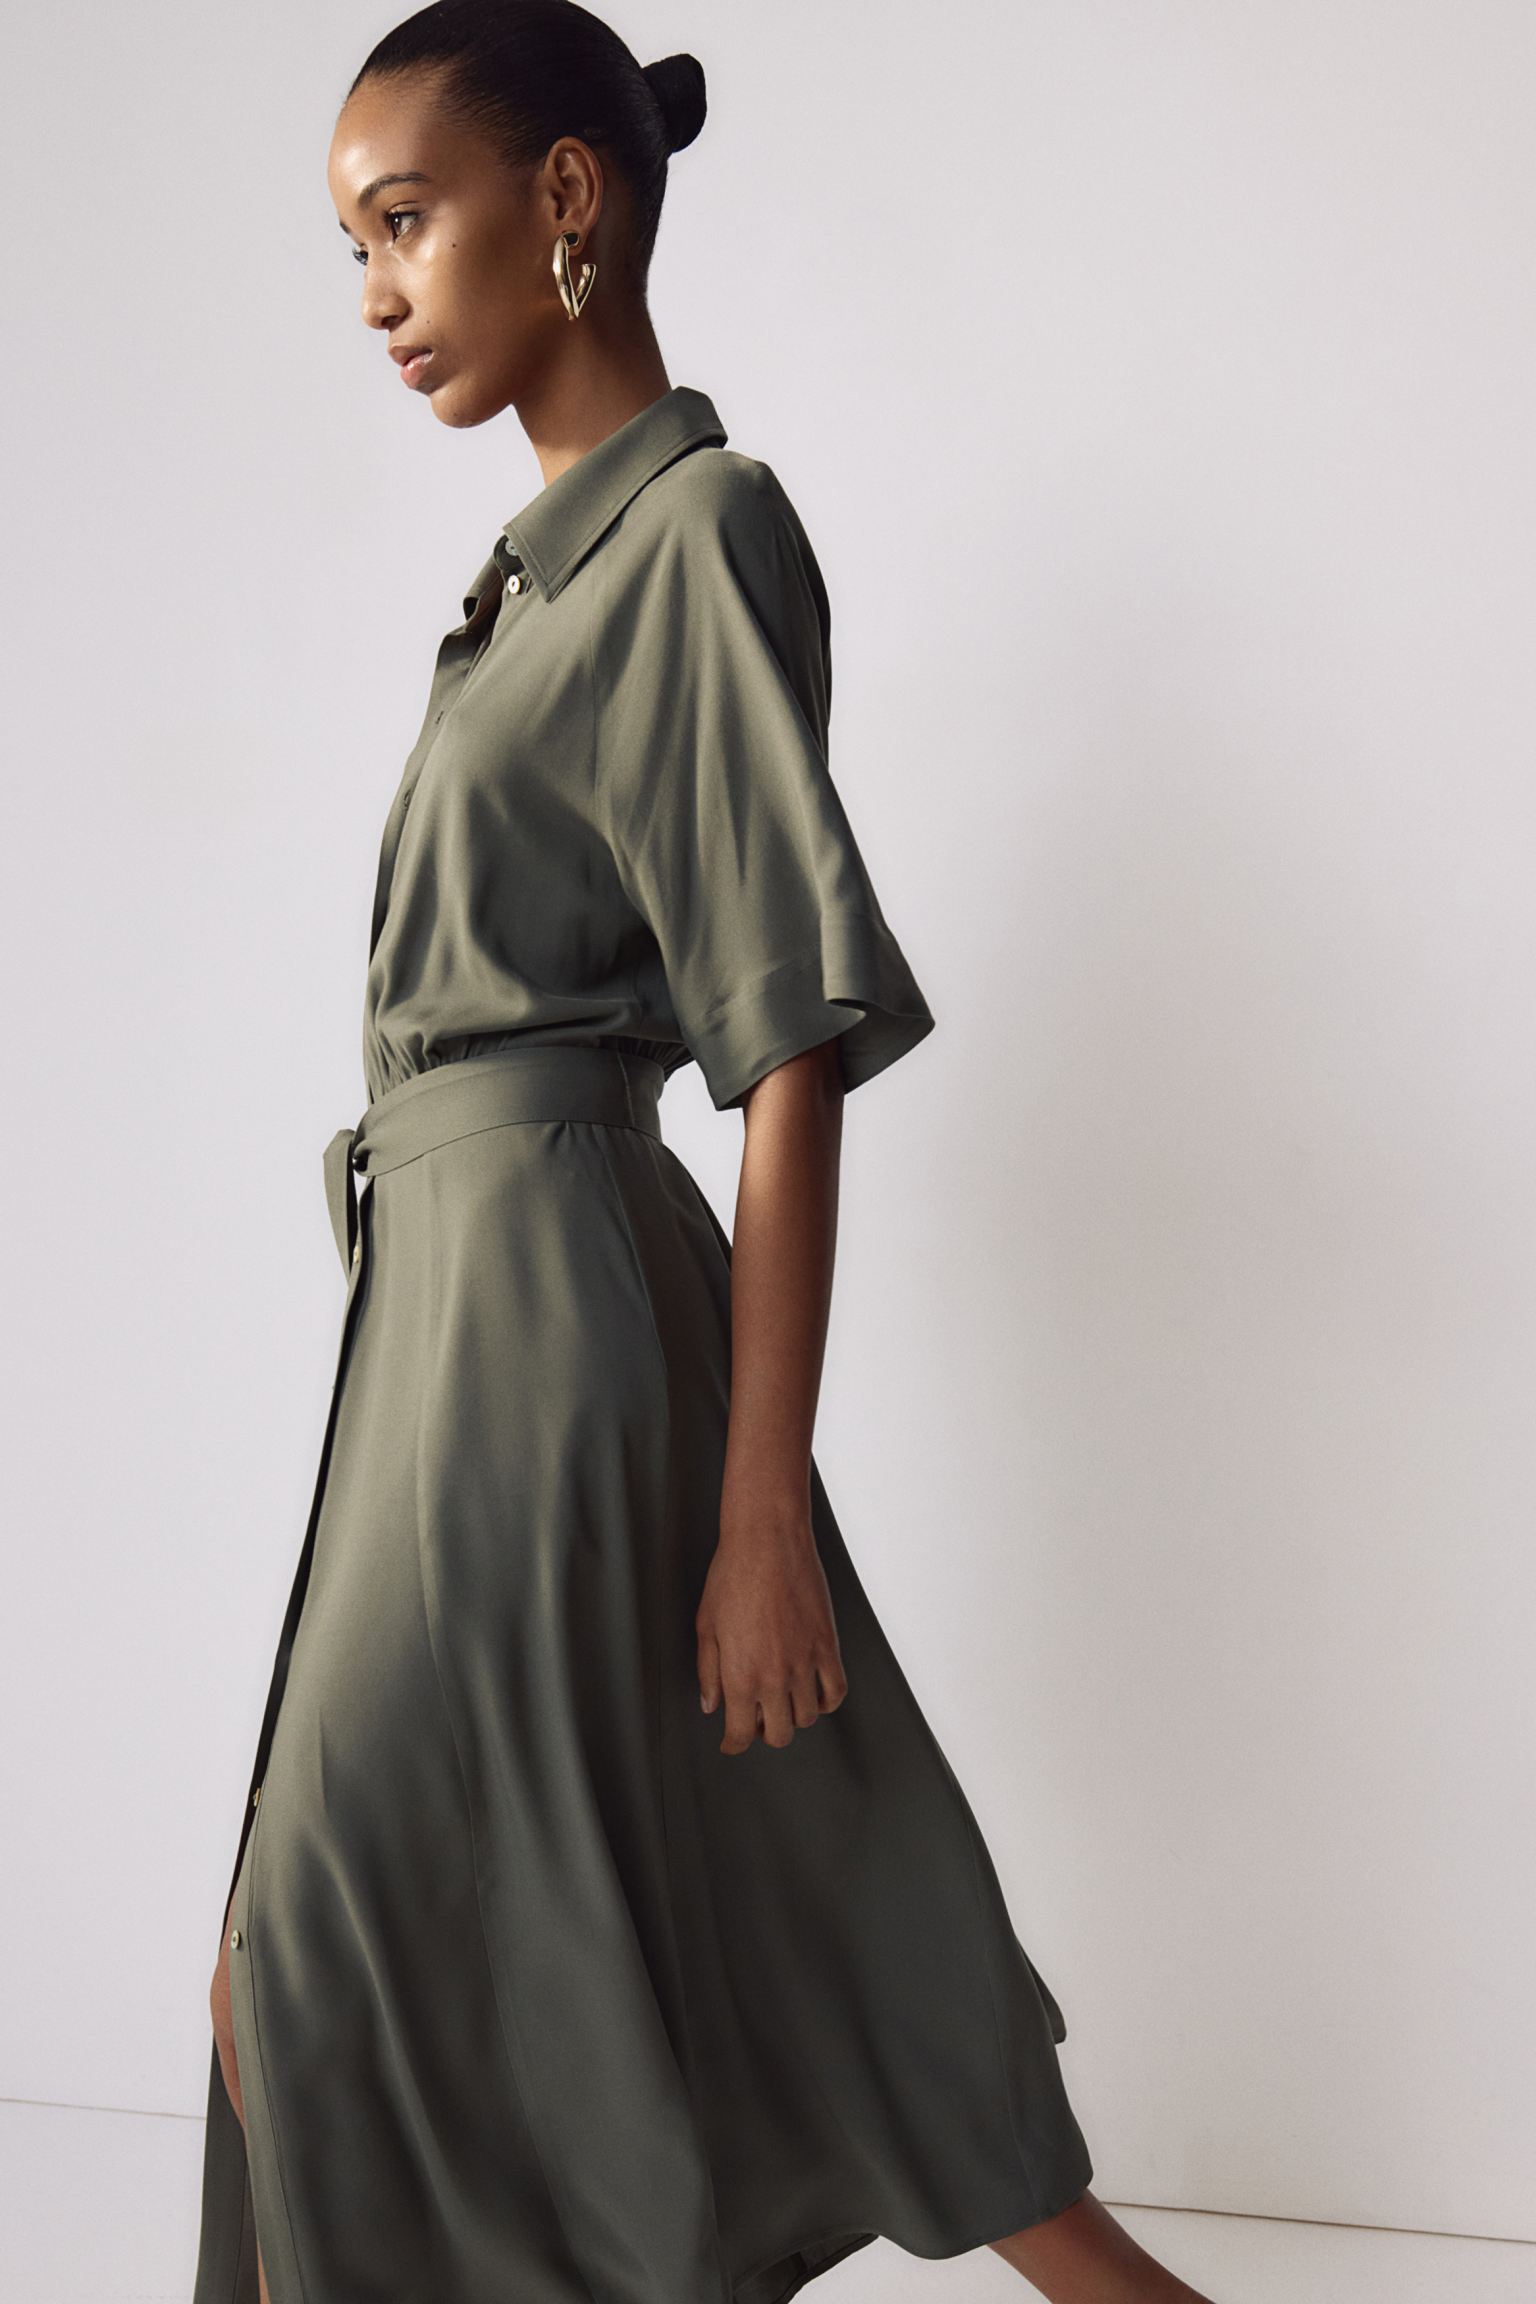 Φόρεμα Σεμιζιέ με δετή ζώνη - Σκούρο Χακί